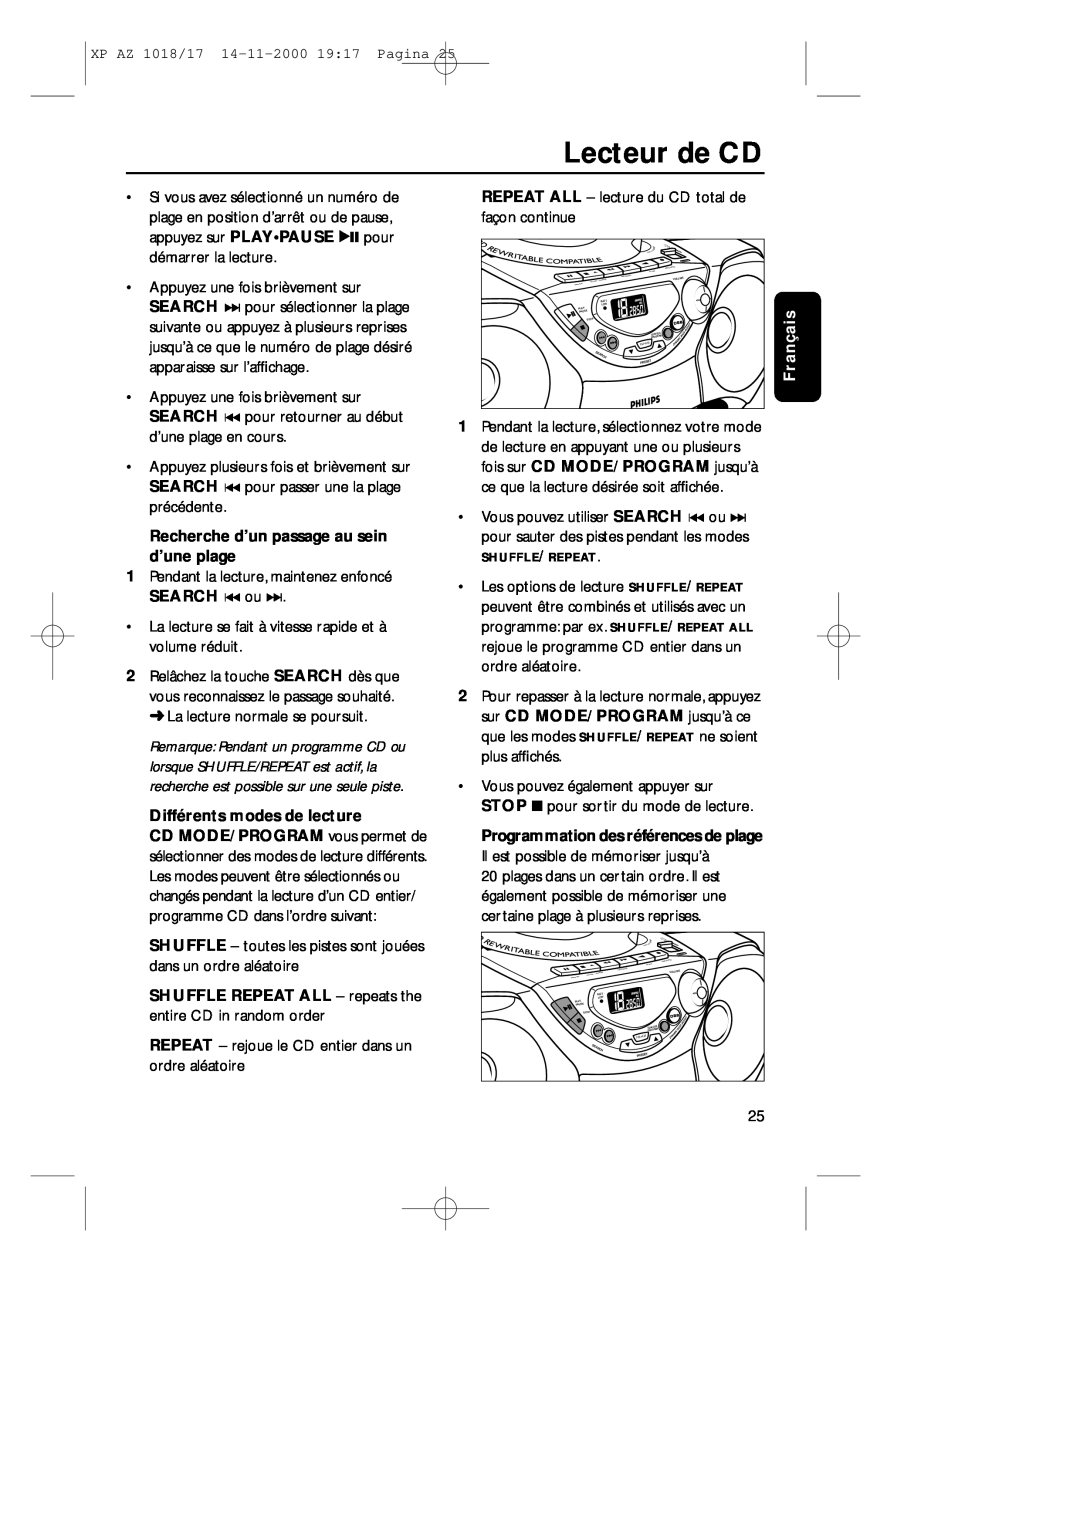 Philips 1018 manual Lecteur de CD, Recherche d’un passage au sein d’une plage, Différents modes de lecture, Fran 